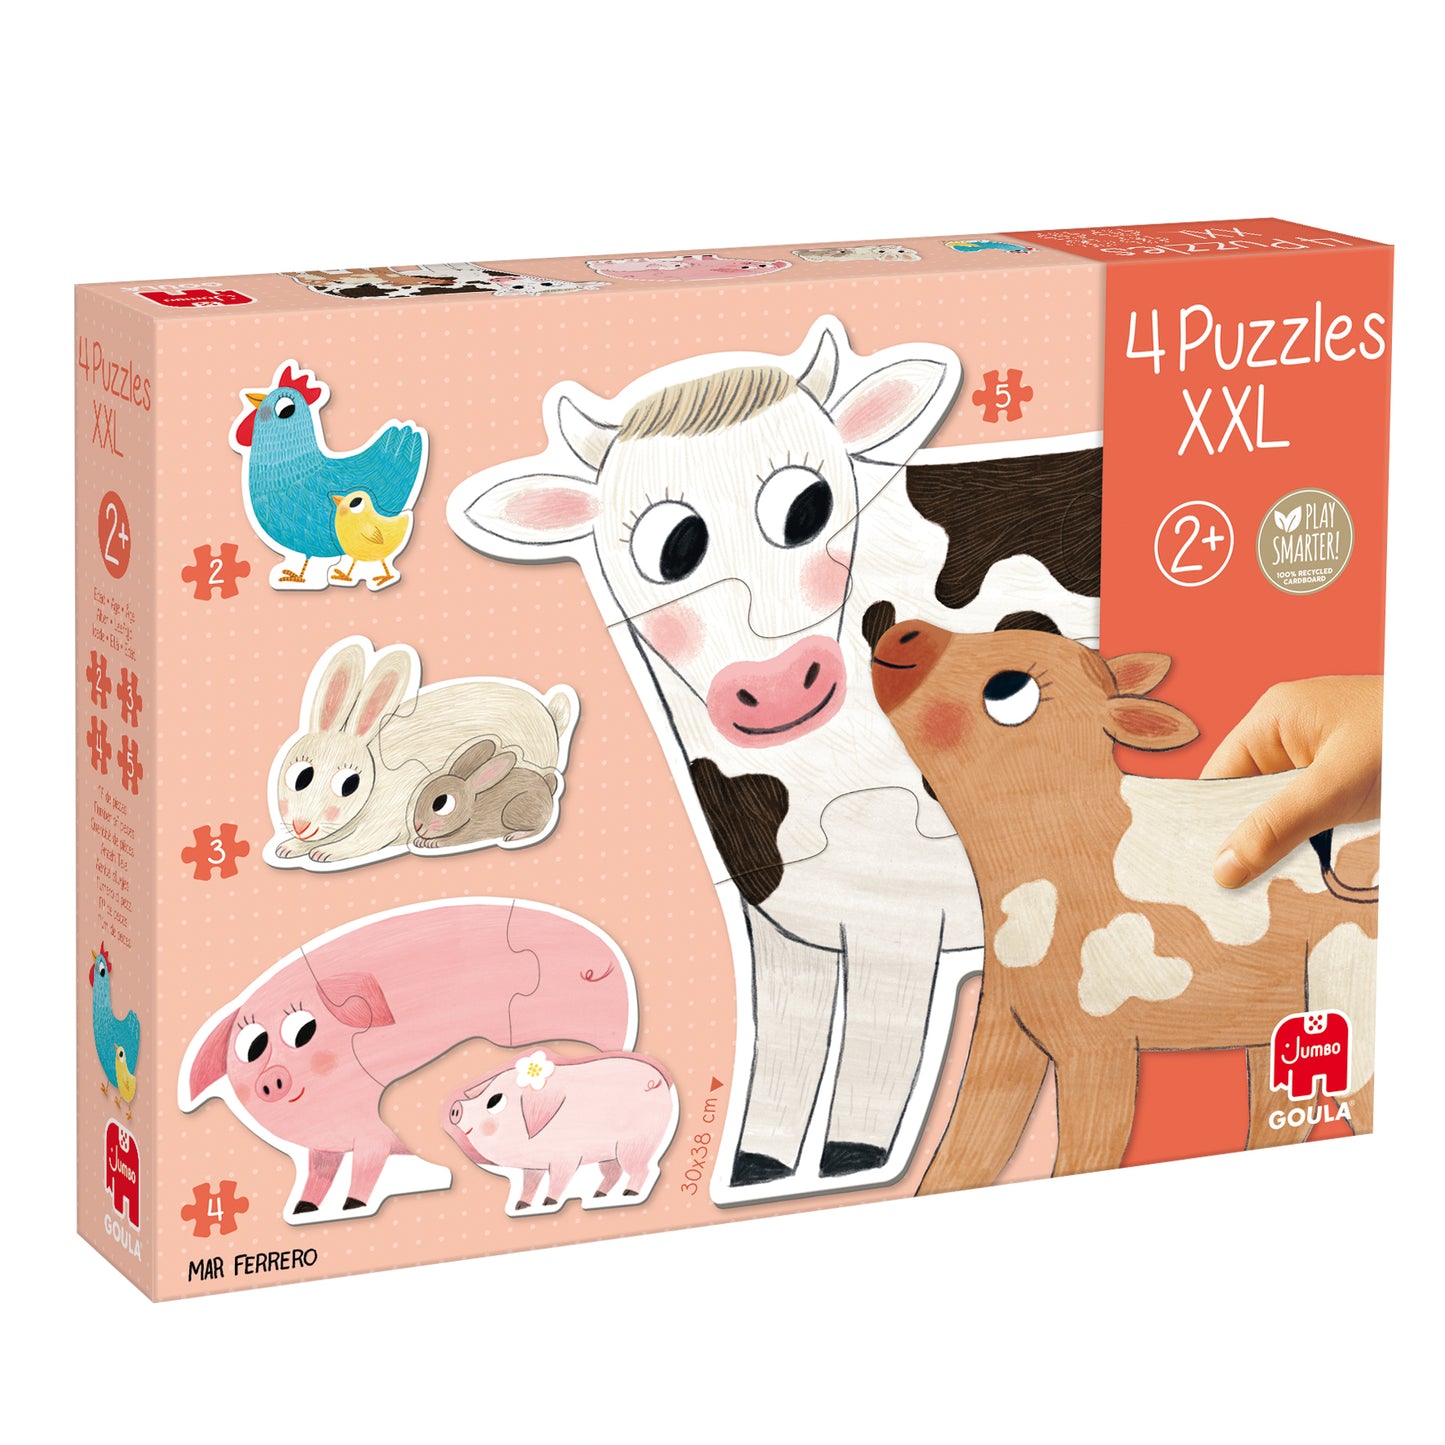 Puzzle XXL Mums & Babies - product image - Jumboplay.com